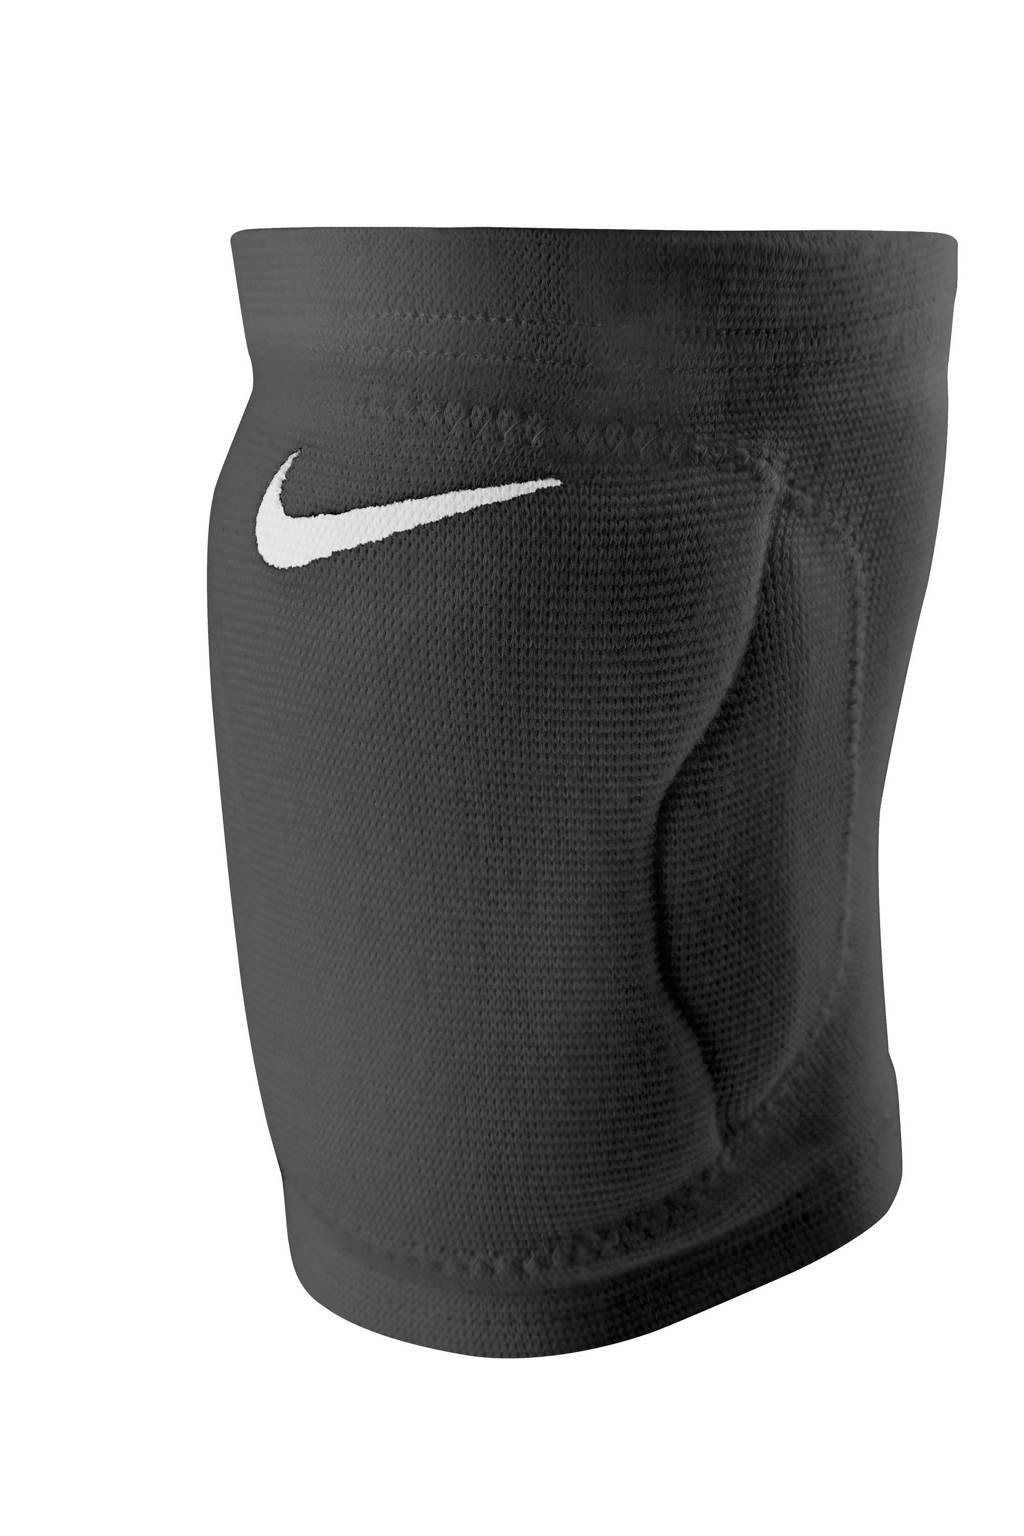 Nike knie beschermer zwart